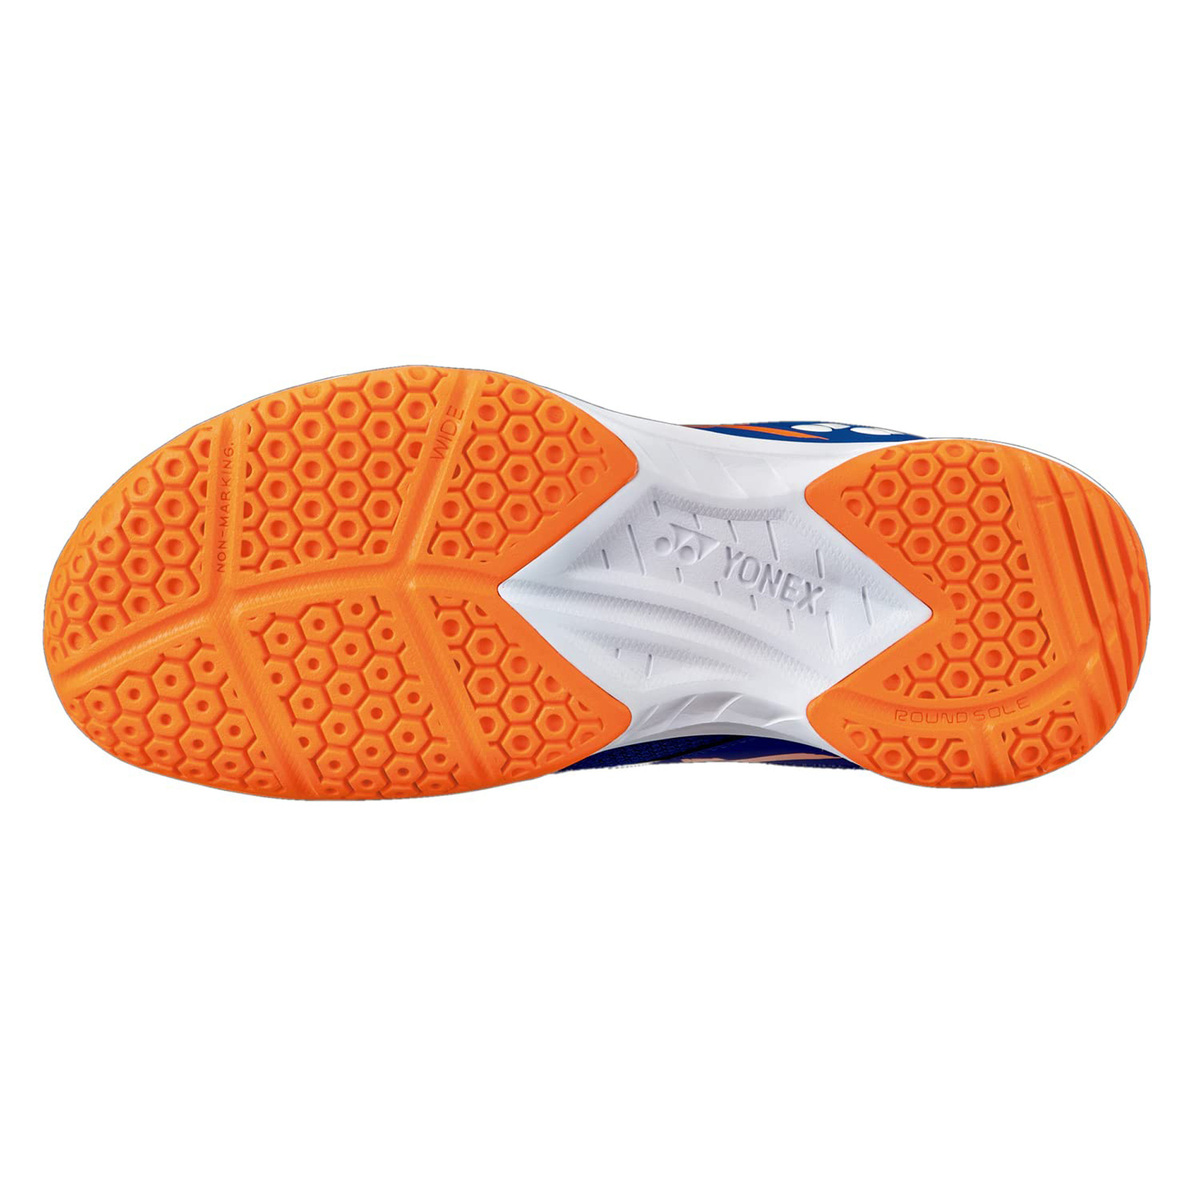 يونيكس حذاء تنس الريشة للرجال، SHB39WEX، أزرق/برتقالي، 43